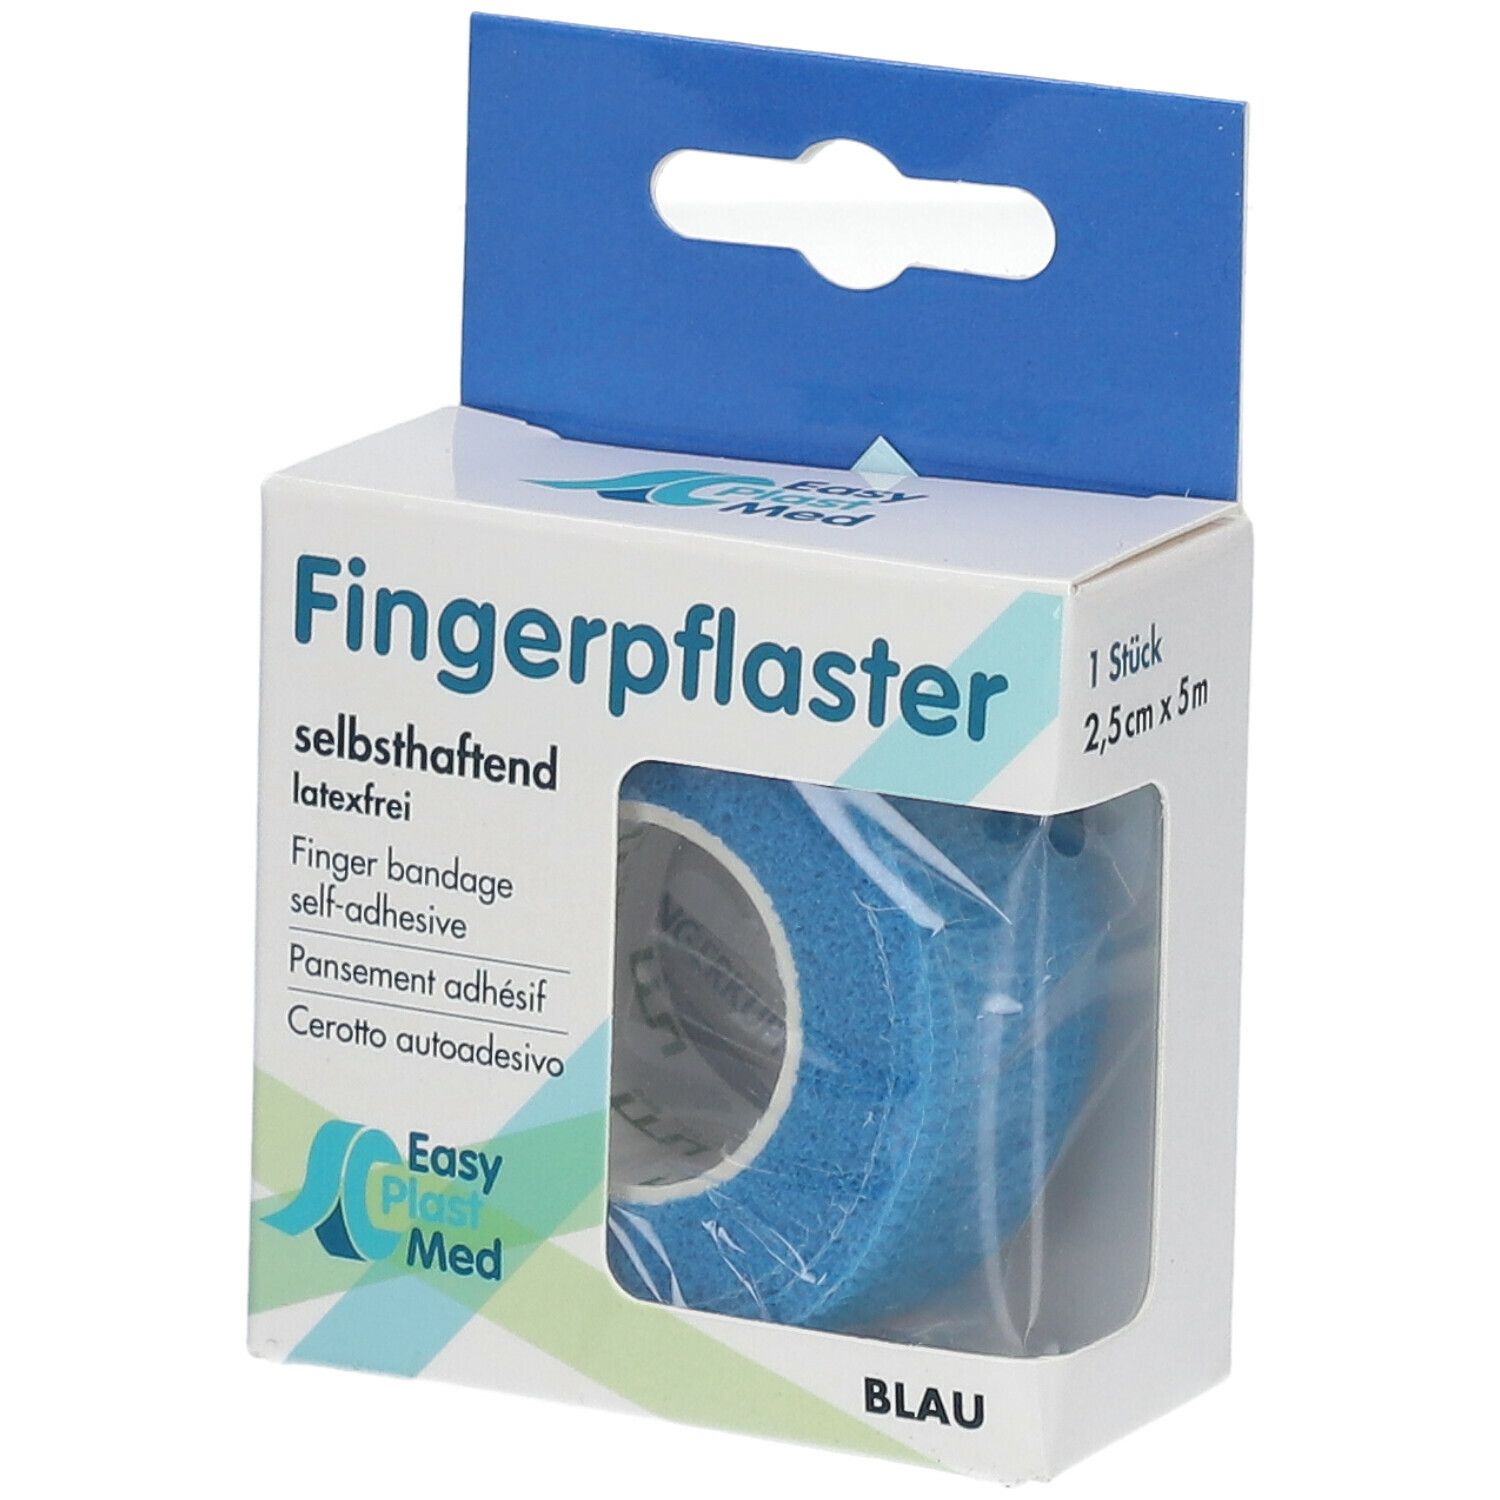 Easy Plast Med Fingerpflaster 2,5 cm x 5 m blau 1 St - SHOP APOTHEKE